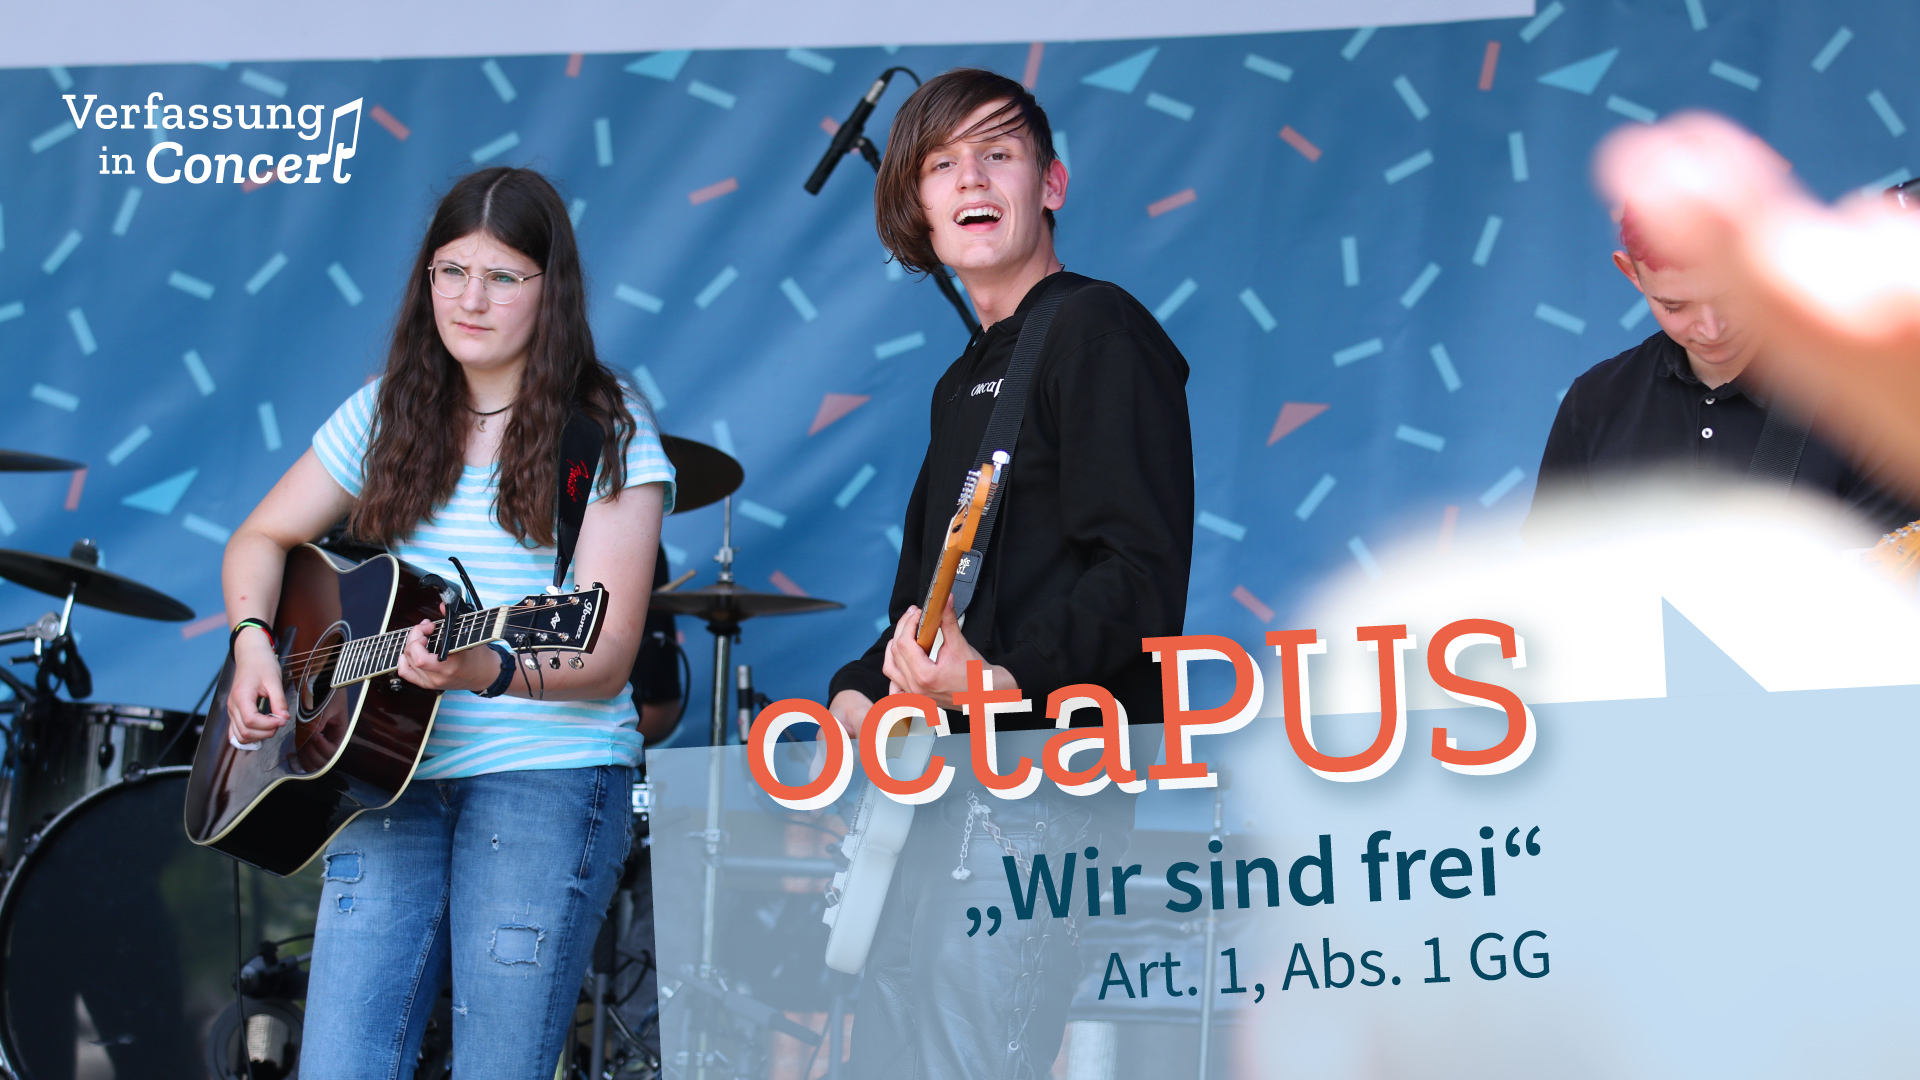 Die Band "oktaPUS" auf der Bühne.